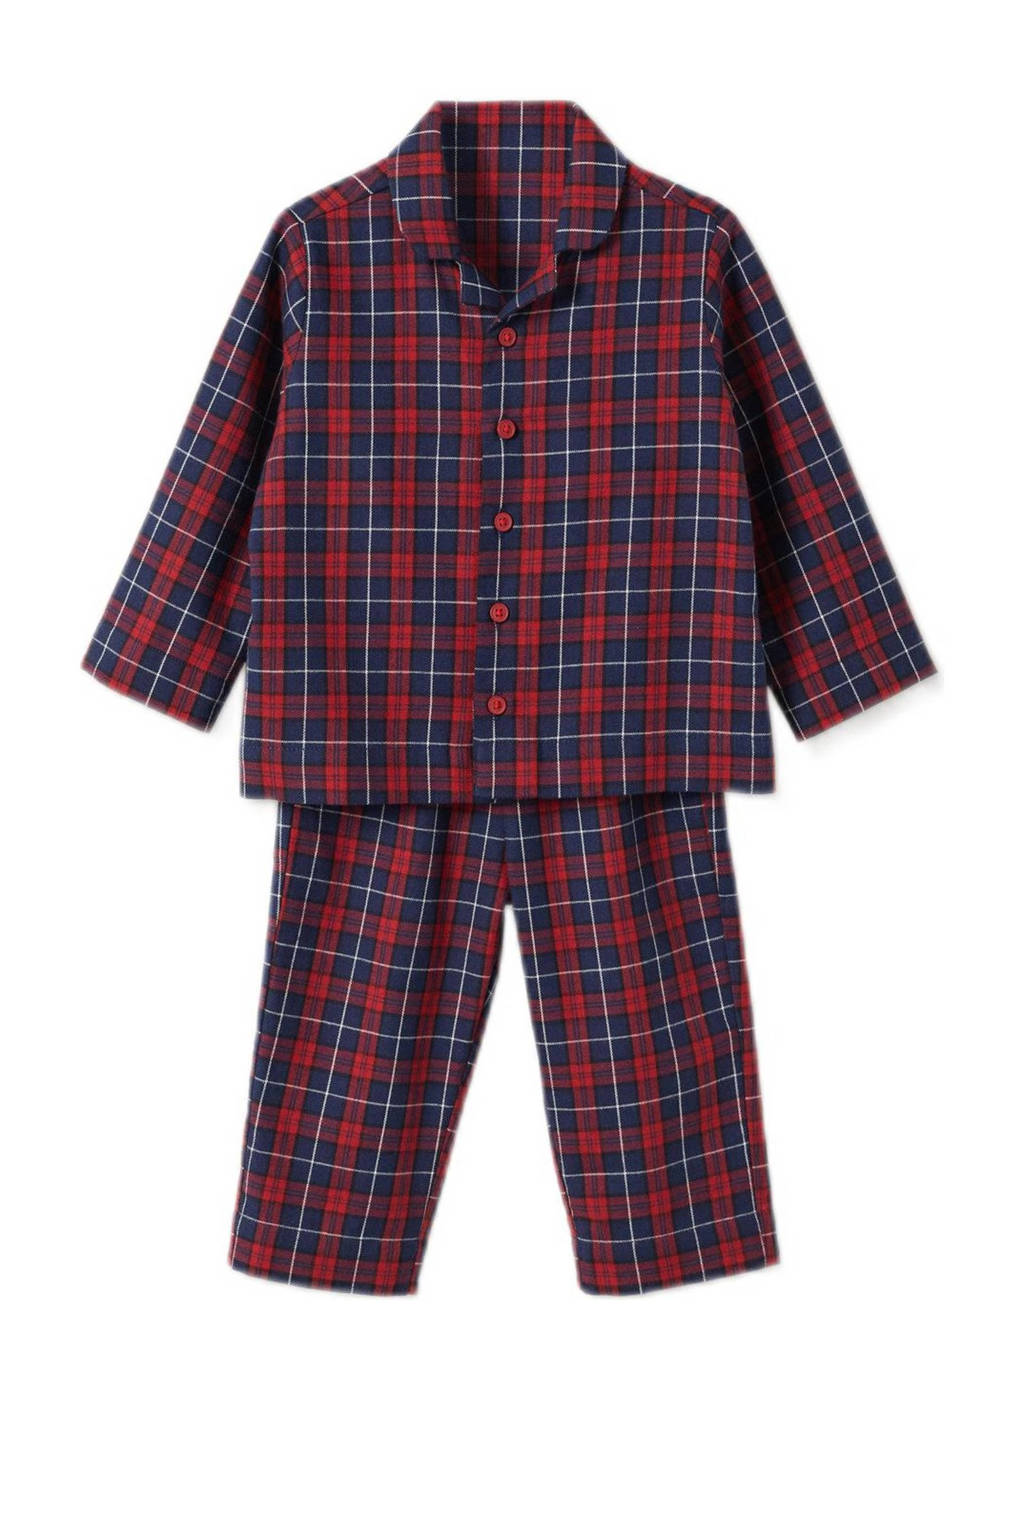 Mango Kids   geruit pyjama marine/rood, Marine/rood